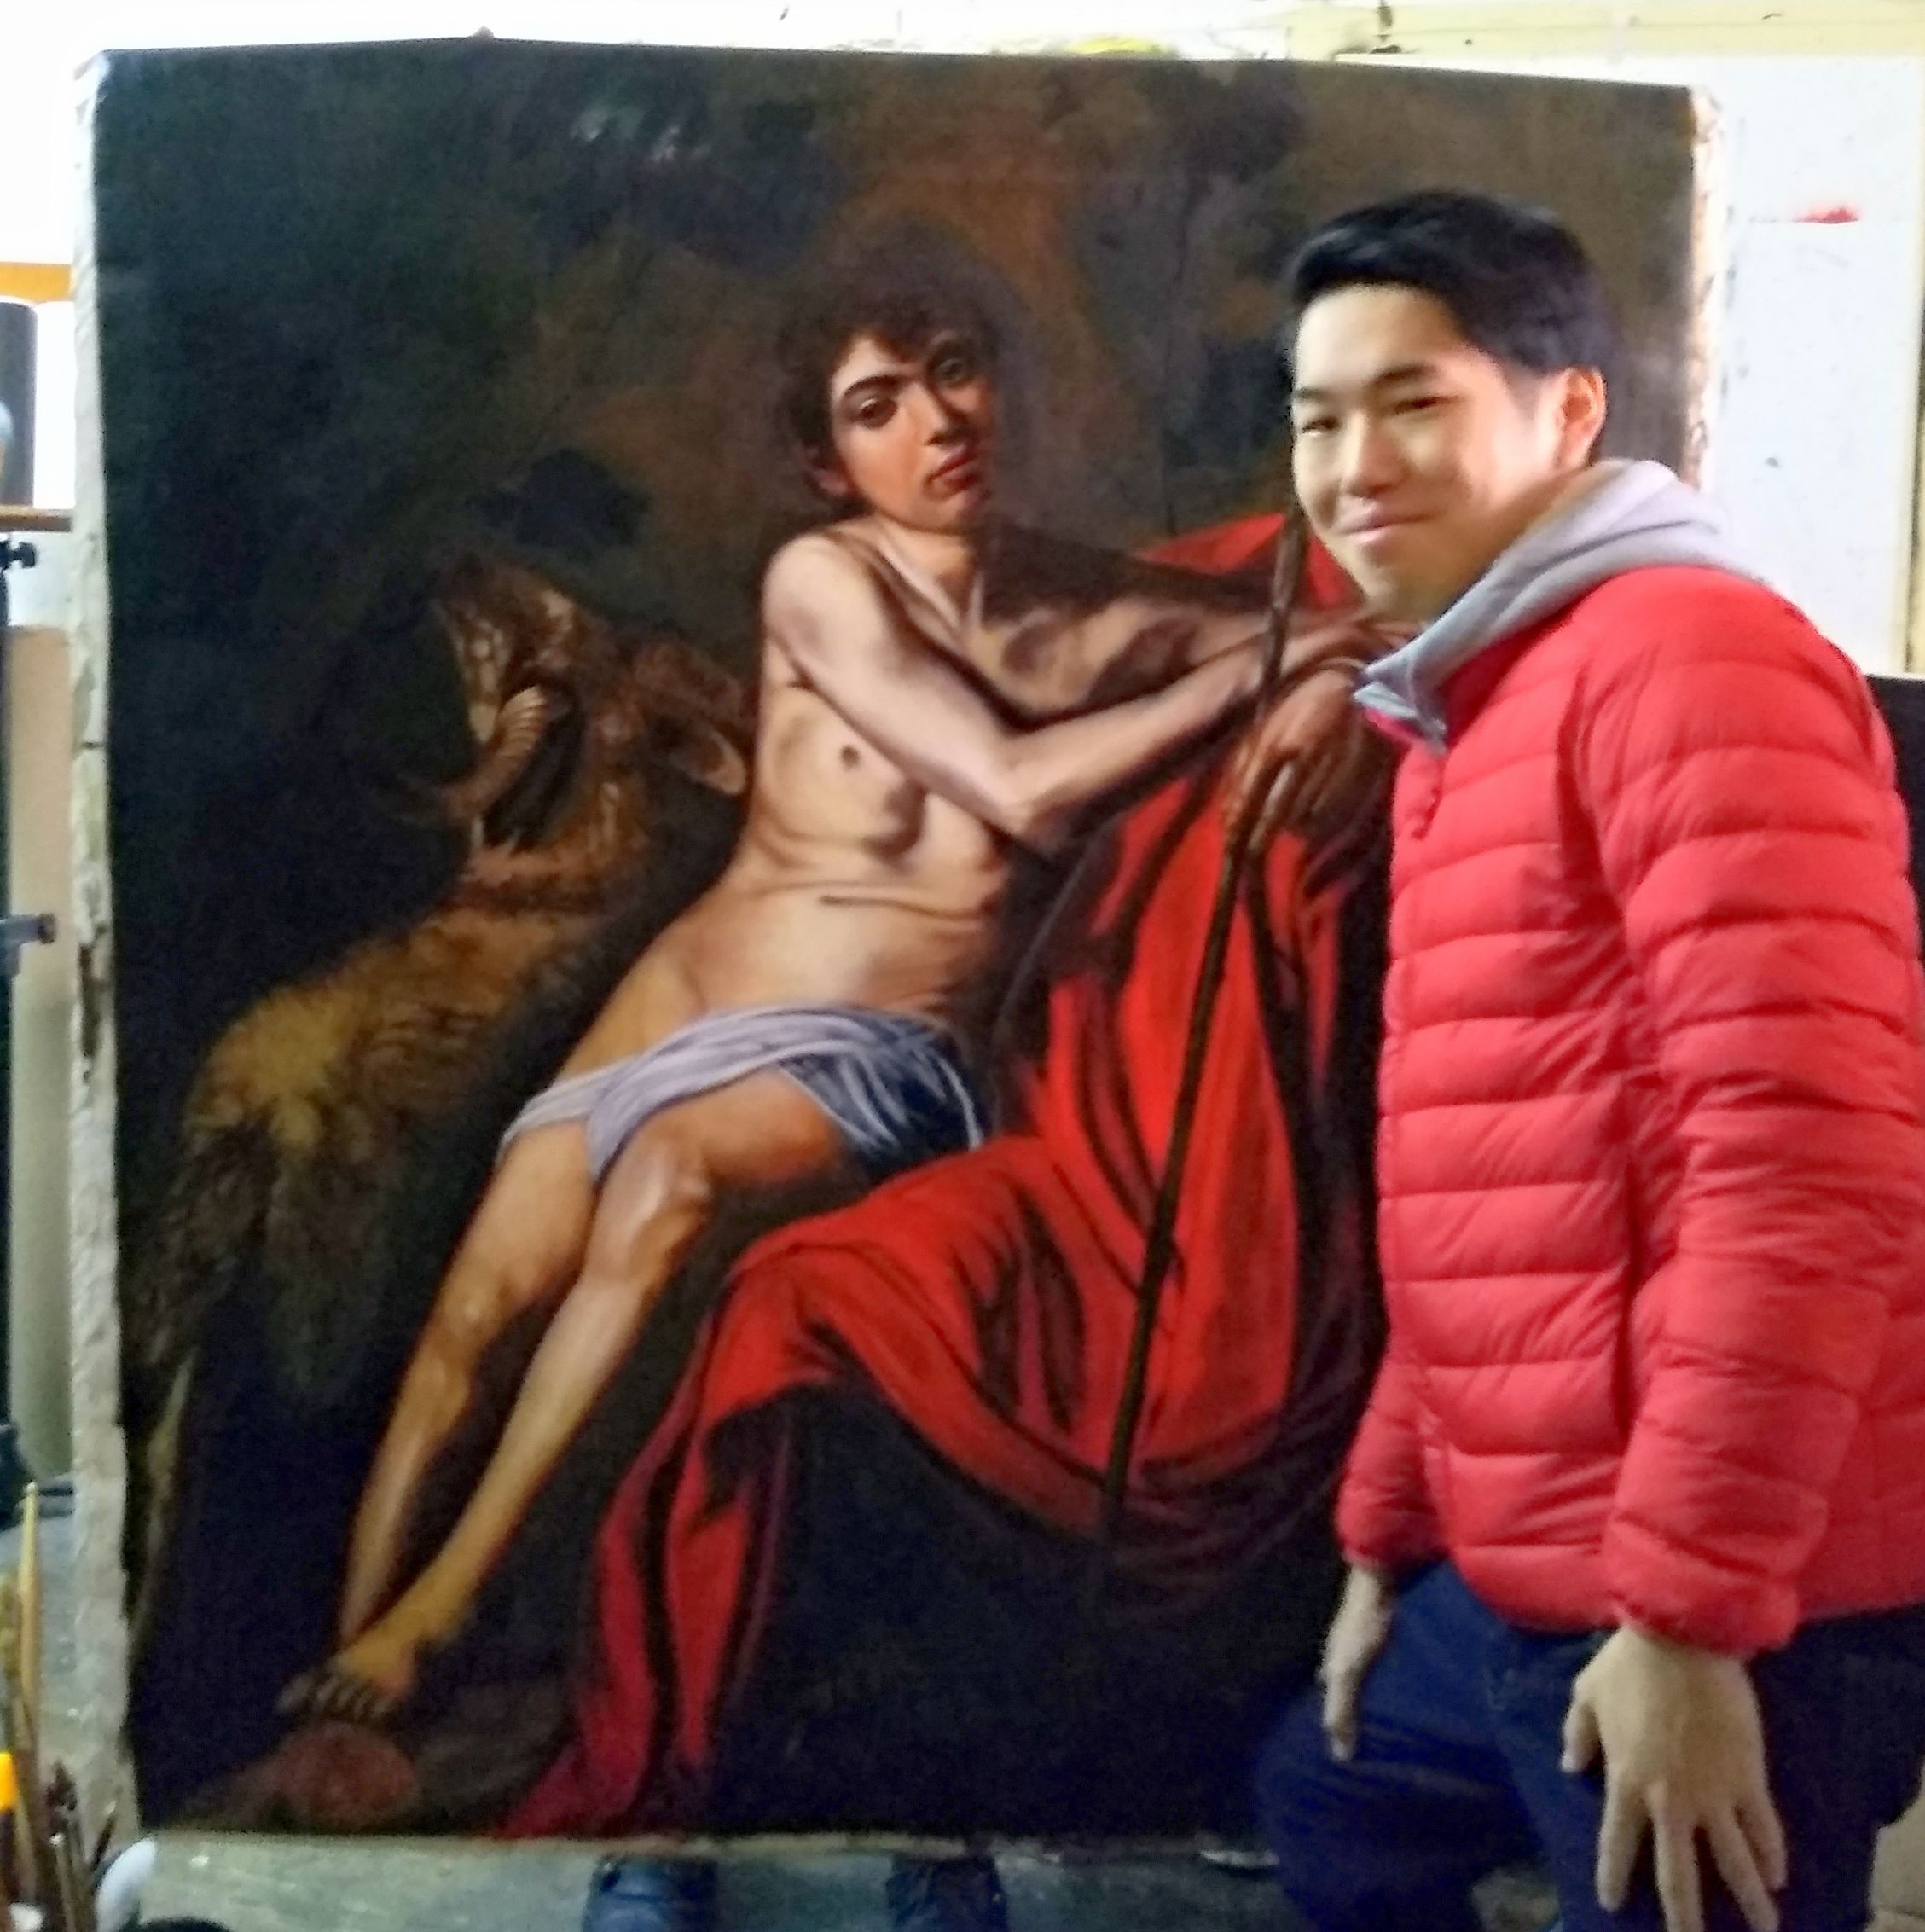 Yusuke with a Caravaggio Replica by #FilippoMariaCazzolla artist #JunkoIkuta #DomenicoCafarchia #LocalGuide